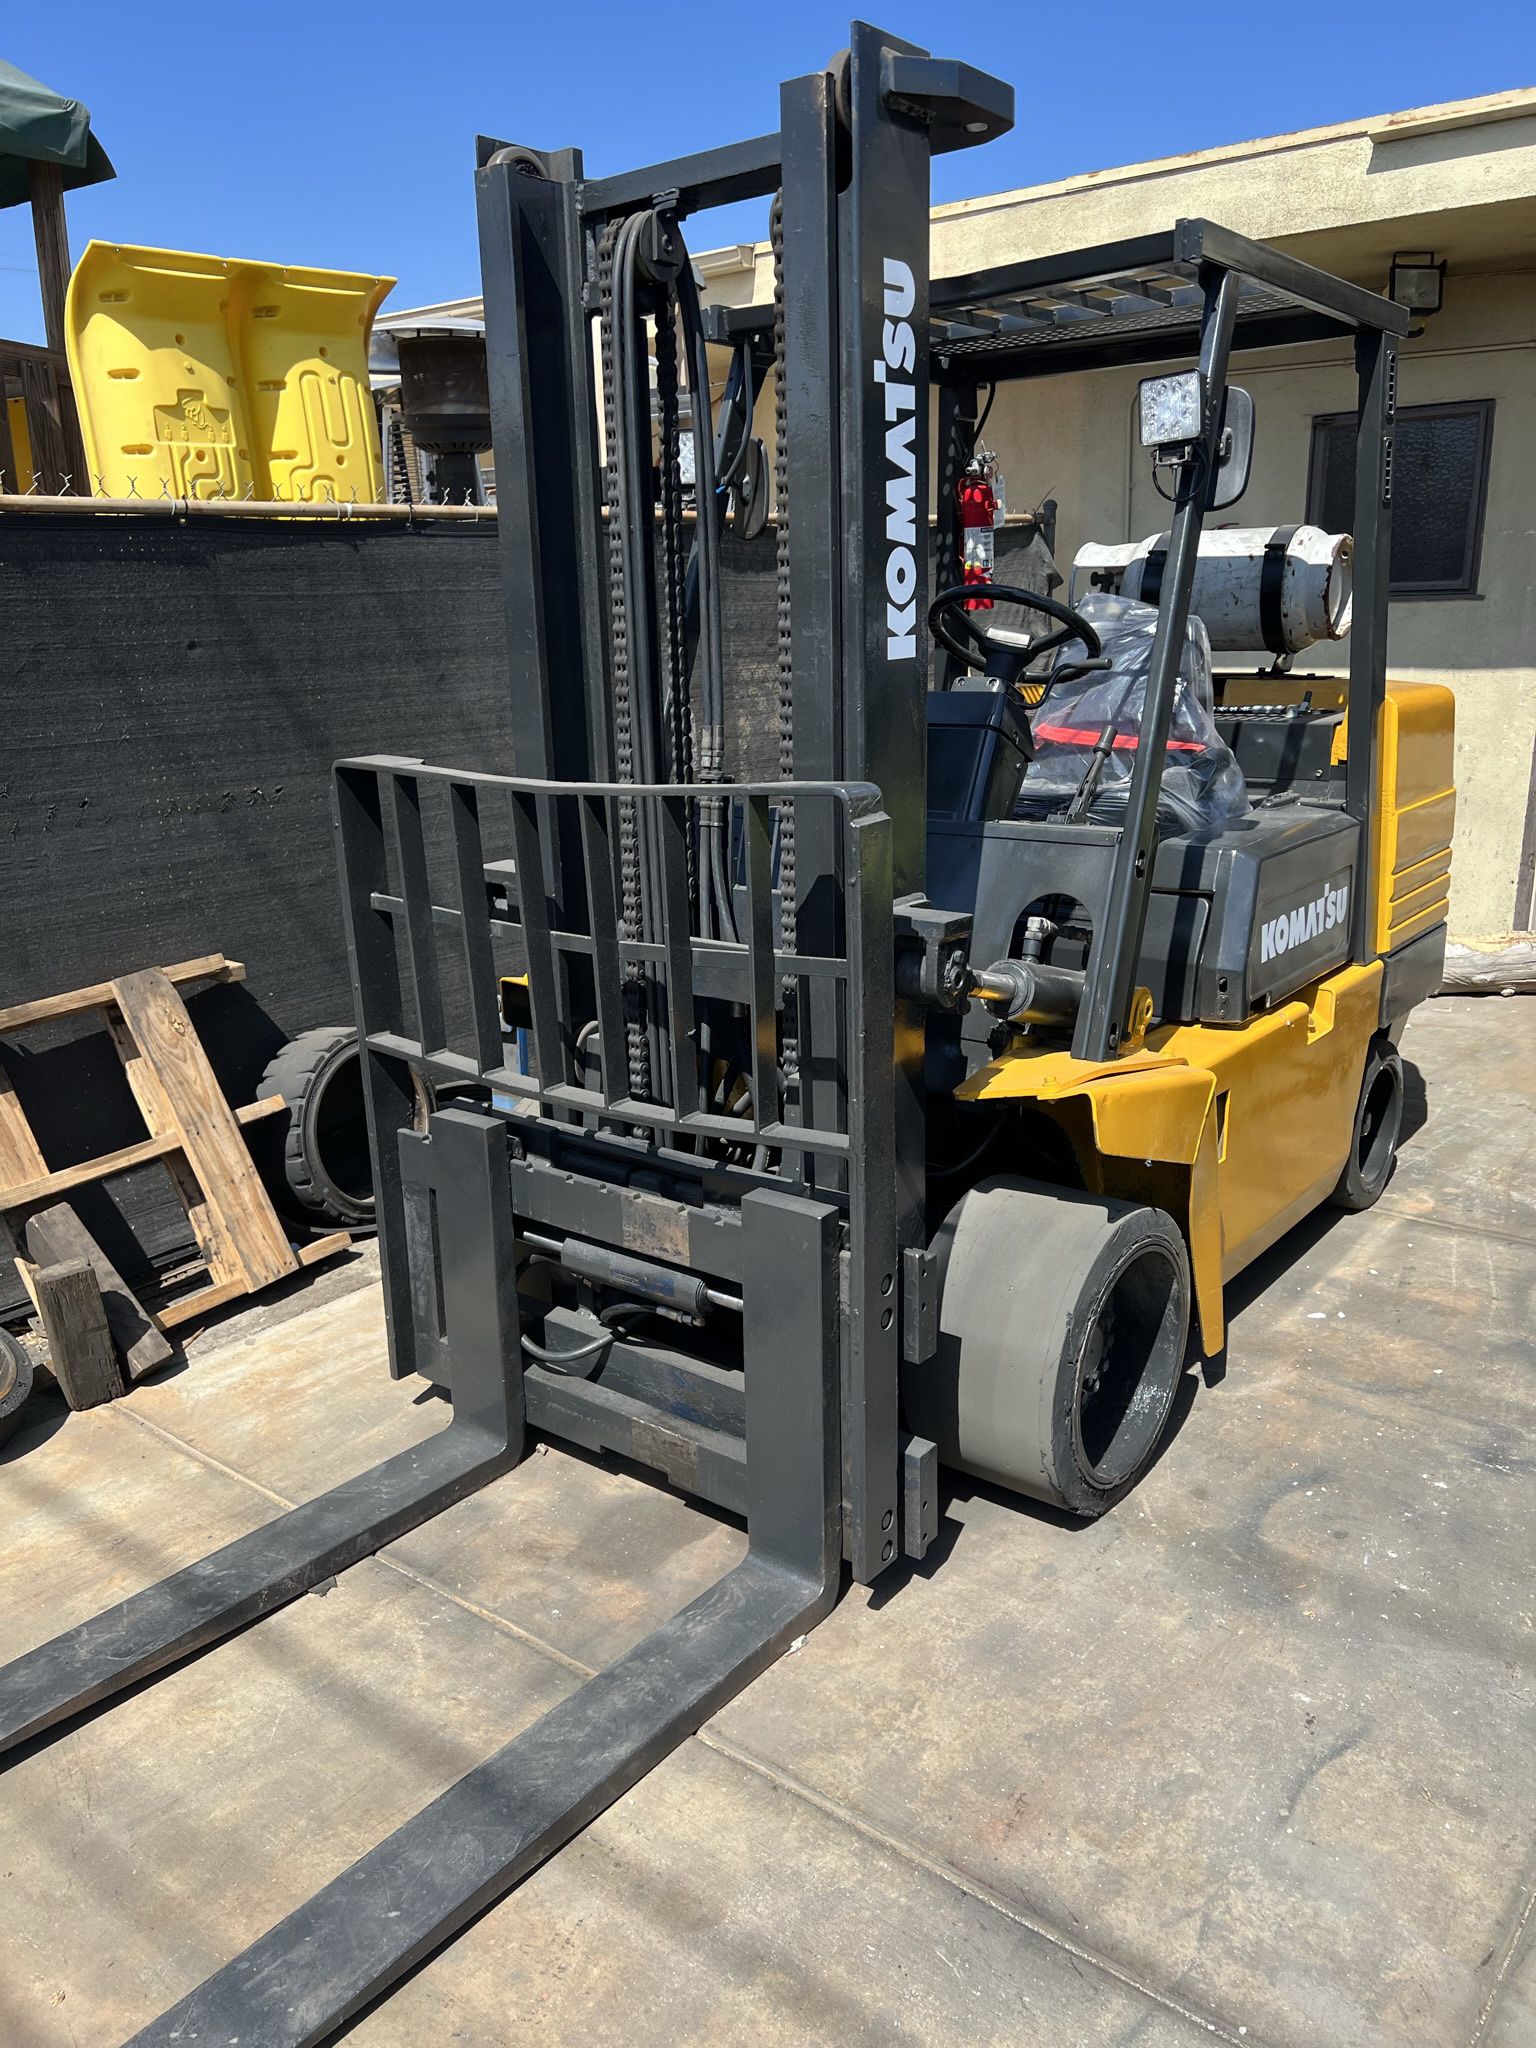 Komatsu Forklift 10,000 pound capacity